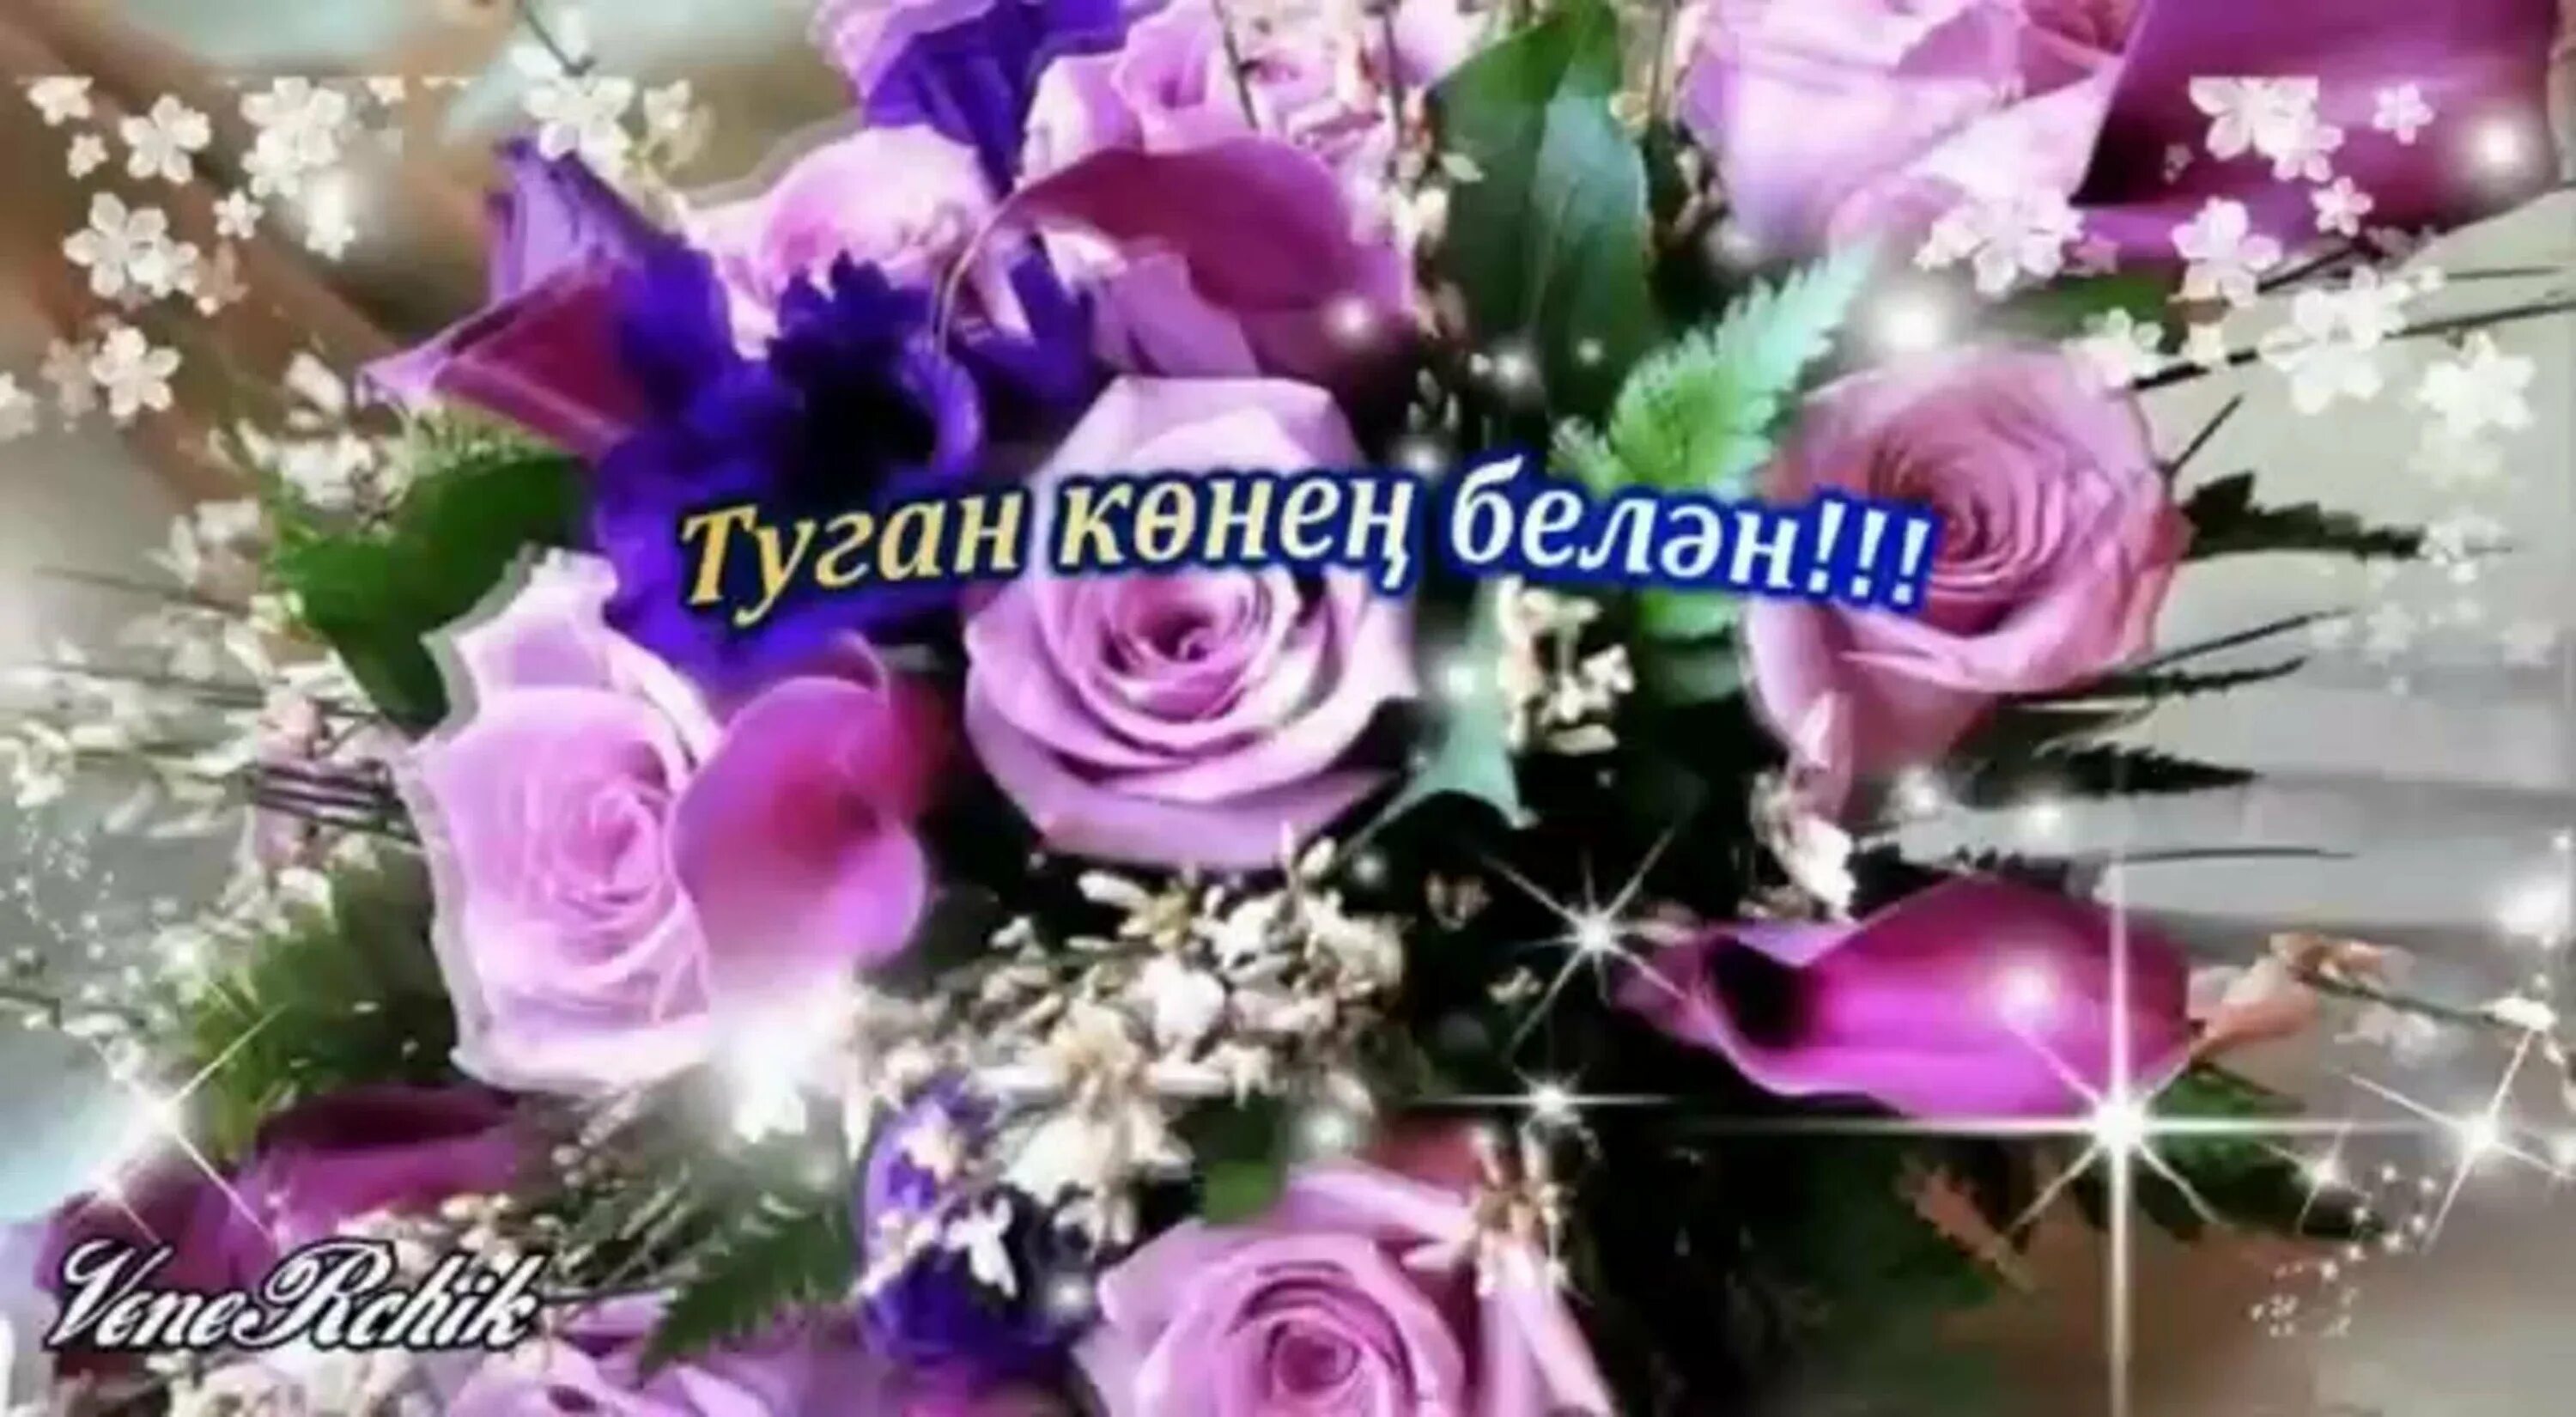 Открытка улыма. С днем рождения. С днем рождения на татарском. Поздравления с днём рождения женщине на татарском языке. Юбилей белэн открытка анимация.